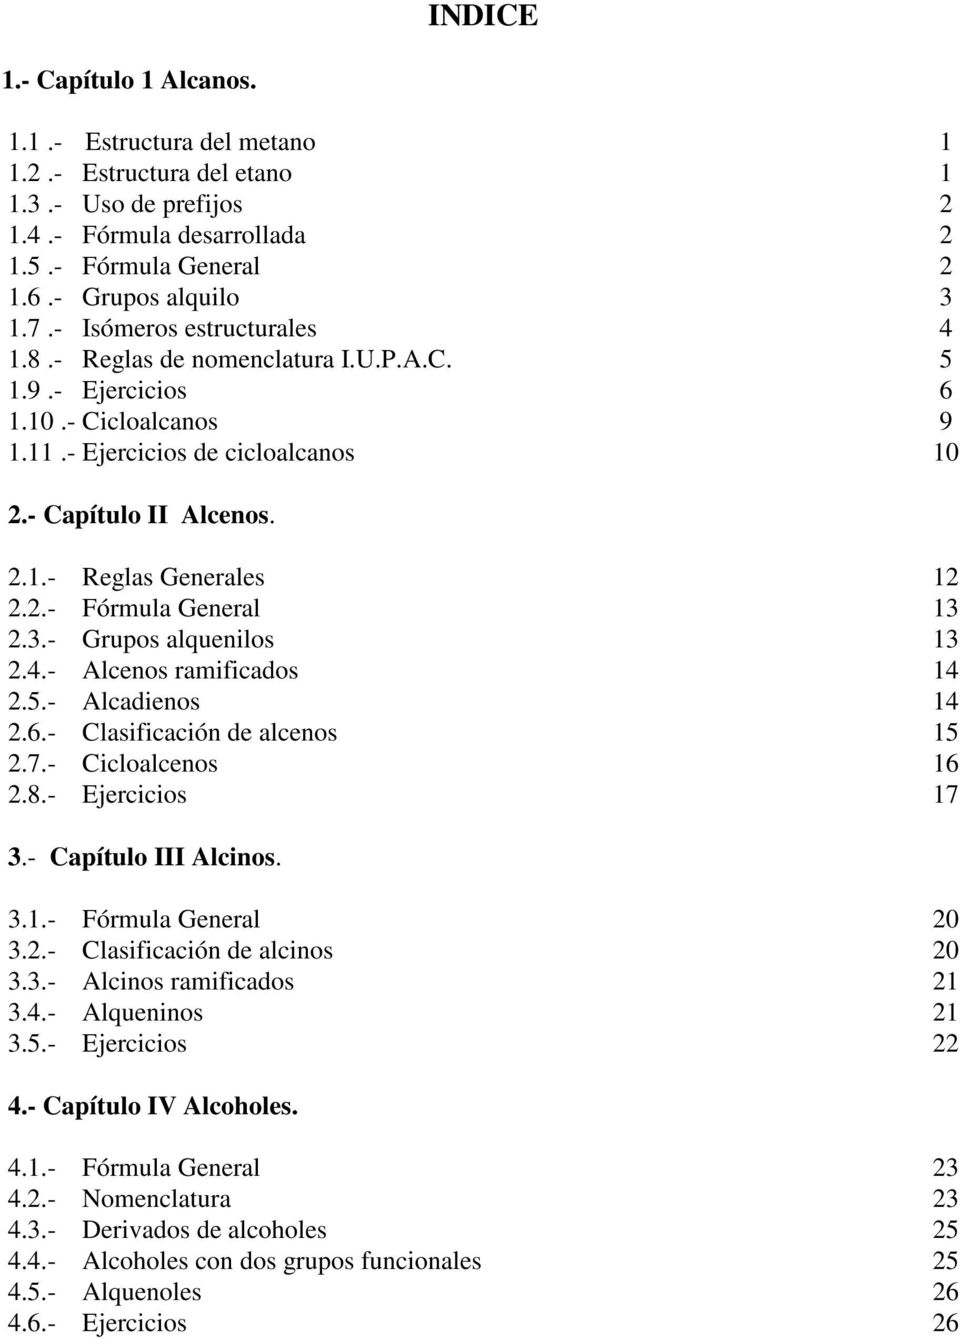 2.- Fórmula General 13 2.3.- Grupos alquenilos 13 2.4.- Alcenos ramificados 14 2.5.- Alcadienos 14 2.6.- asificación de alcenos 15 2.7.- Cicloalcenos 16 2.8.- Ejercicios 17 3.- Capítulo III Alcinos.